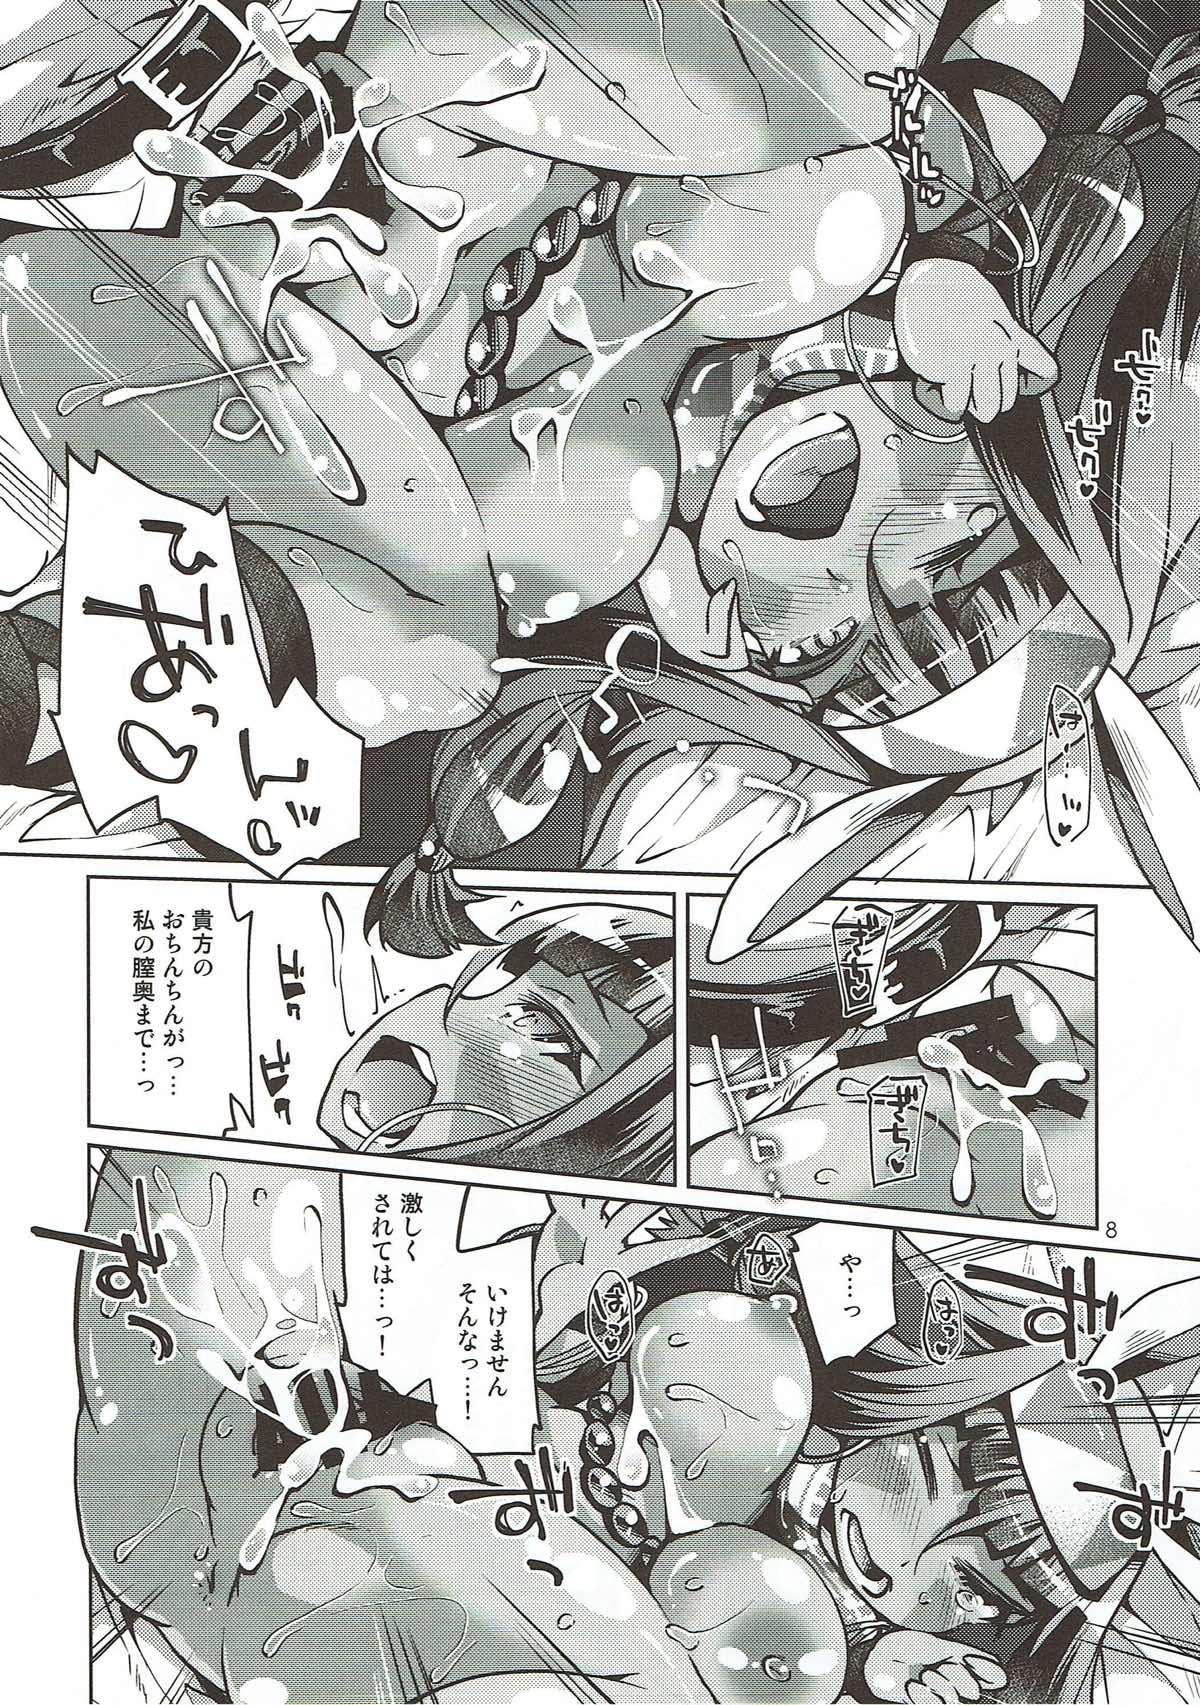 Metendo Atashi Ponkotsu SR Servant - Fate grand order 18yearsold - Page 7